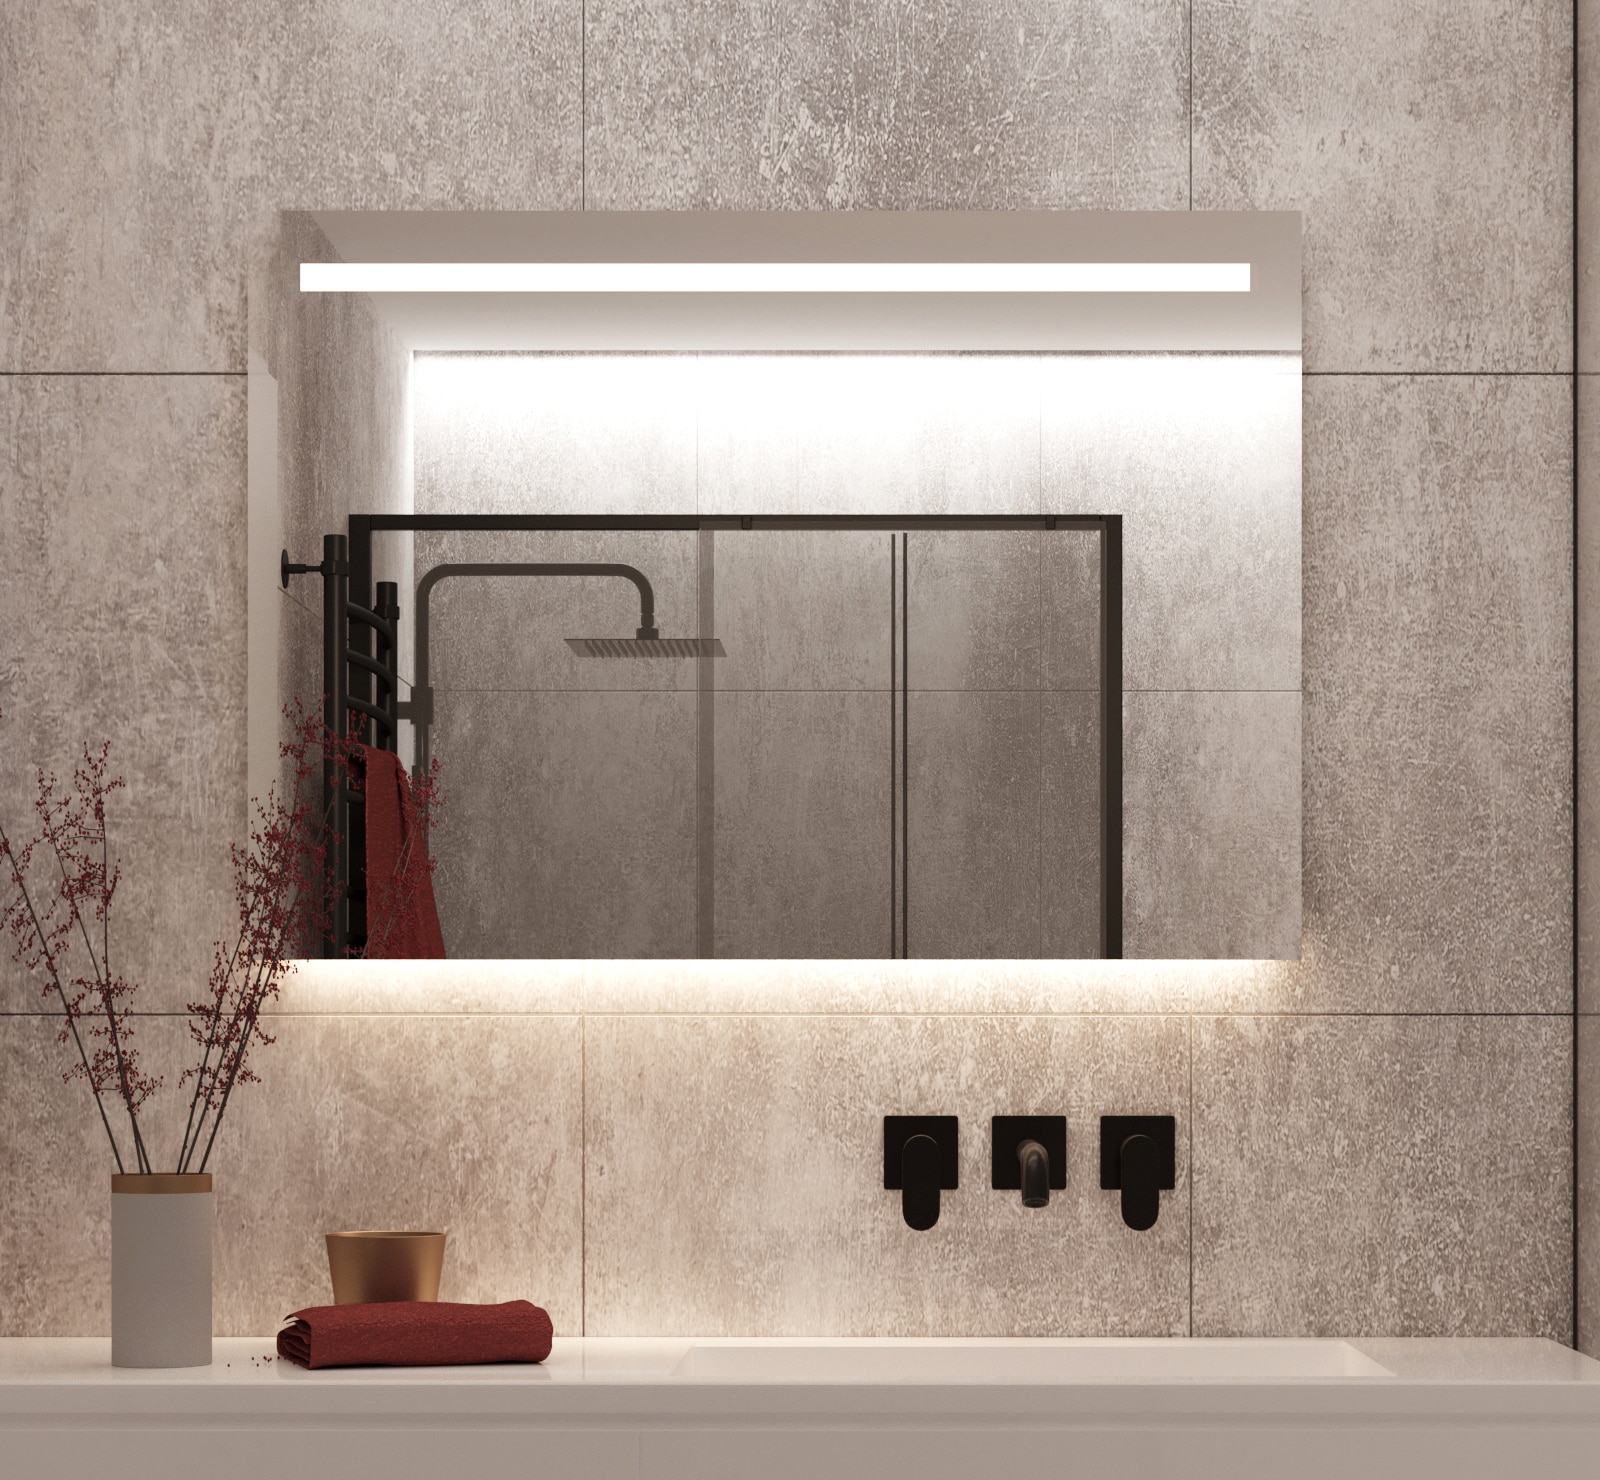 Badkamerspiegel met LED verlichting, verwarming, sensor en 100x70 cm - Designspiegels